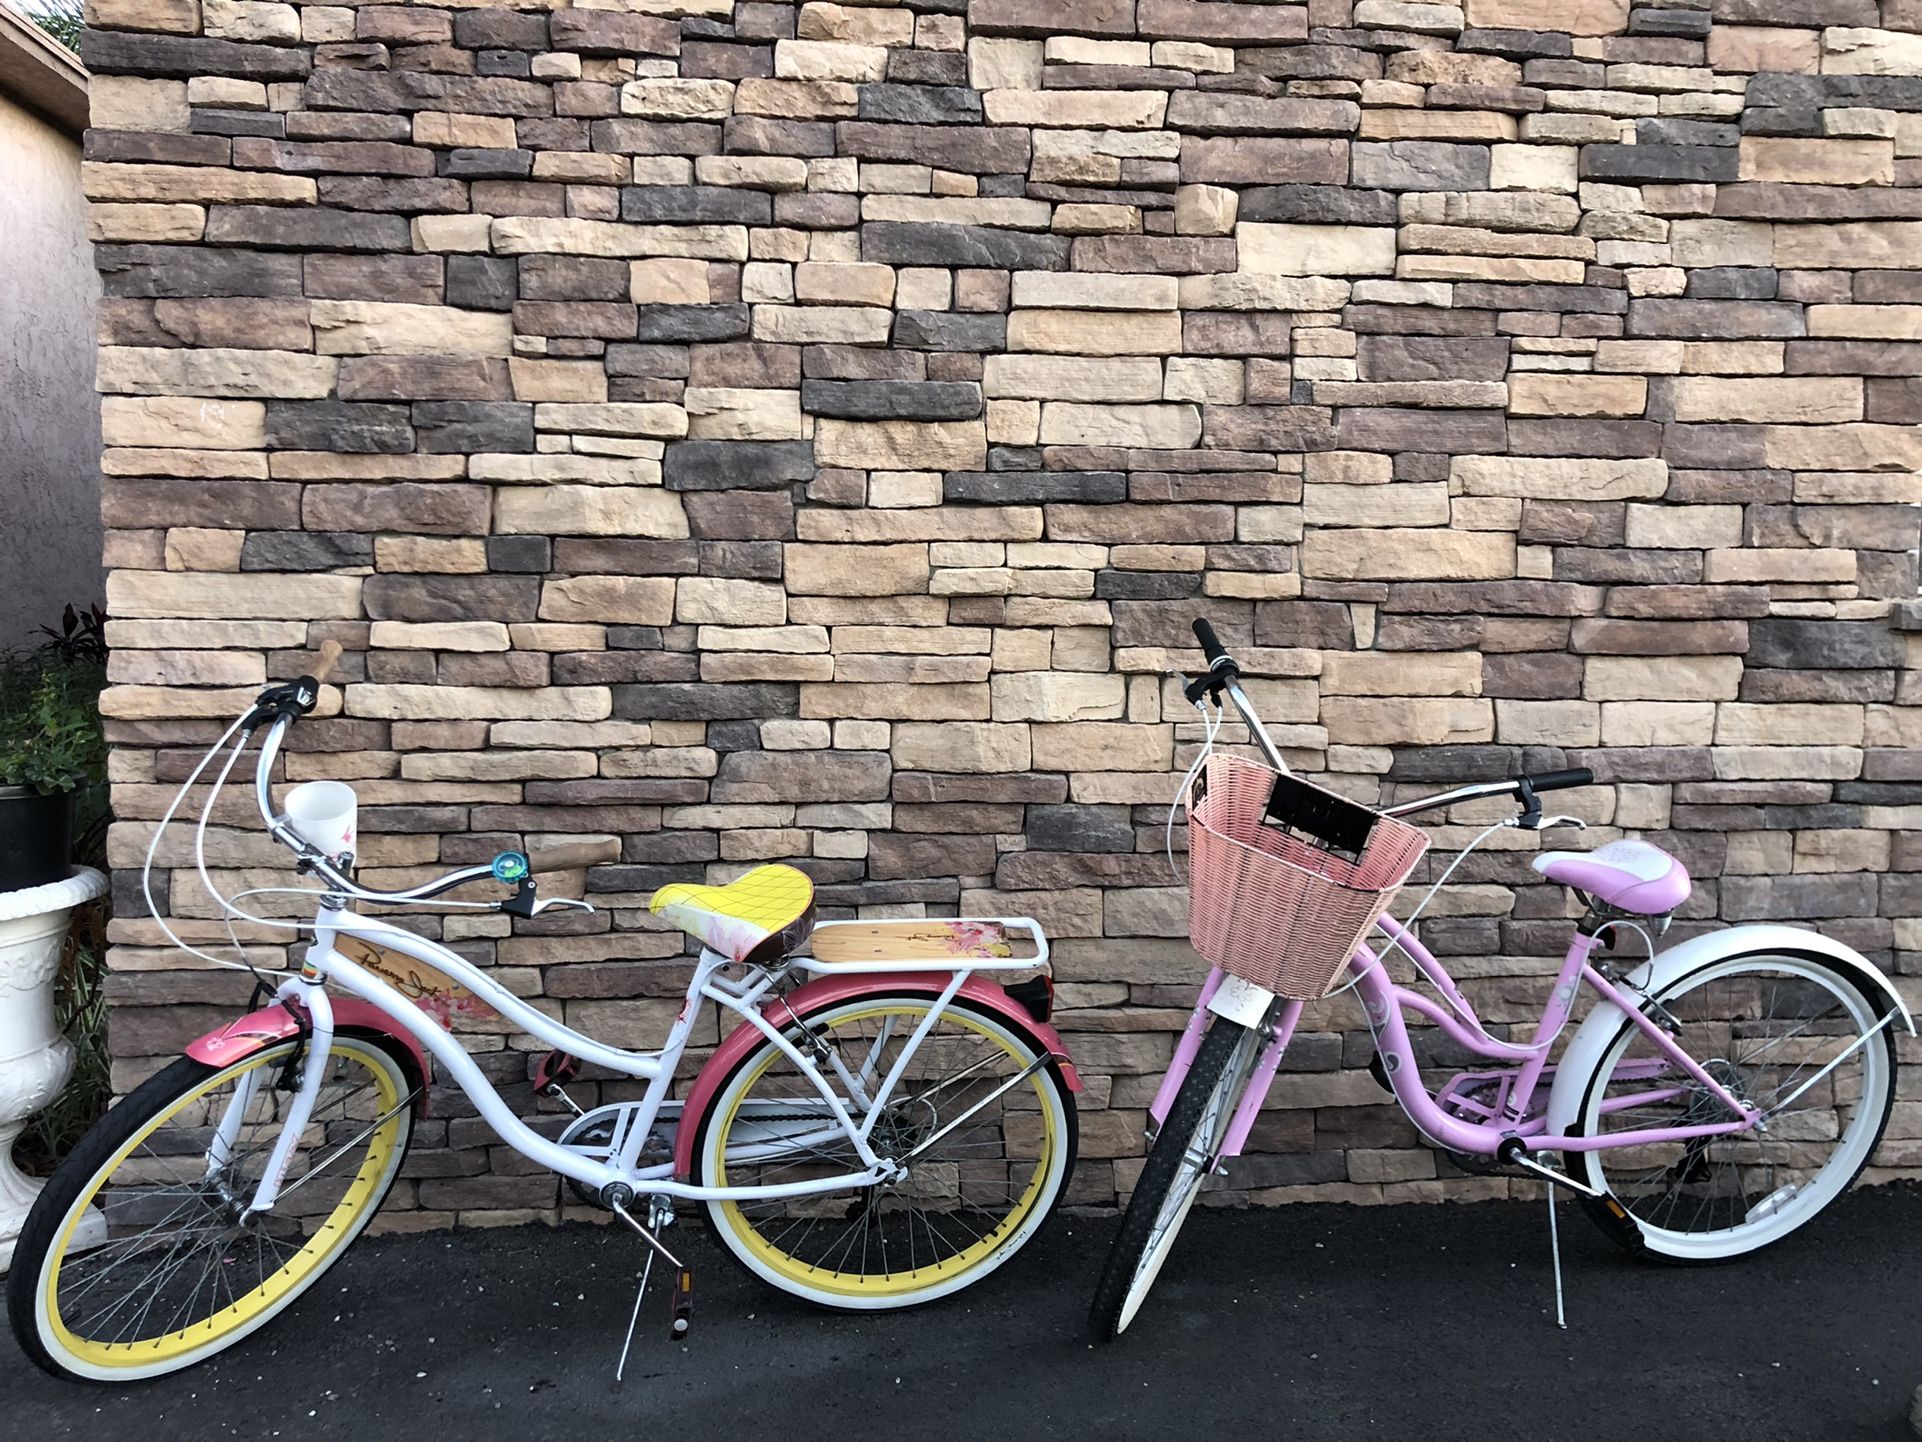 Two Women’s Cruiser bikes